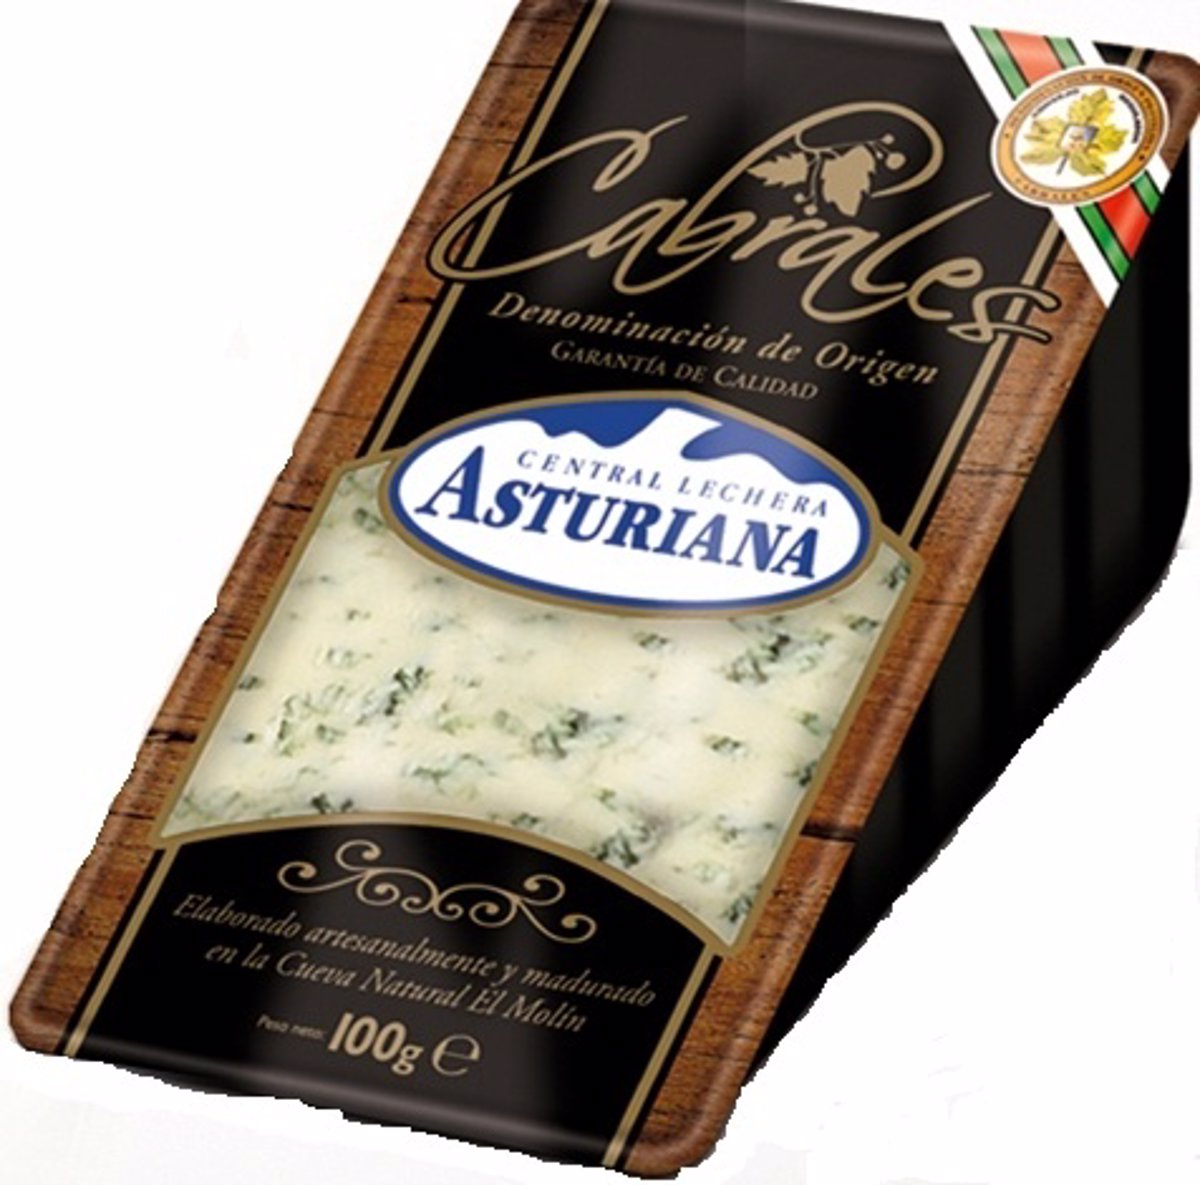 El queso - Leche de Picos - Central Lechera de los Picos de Europa